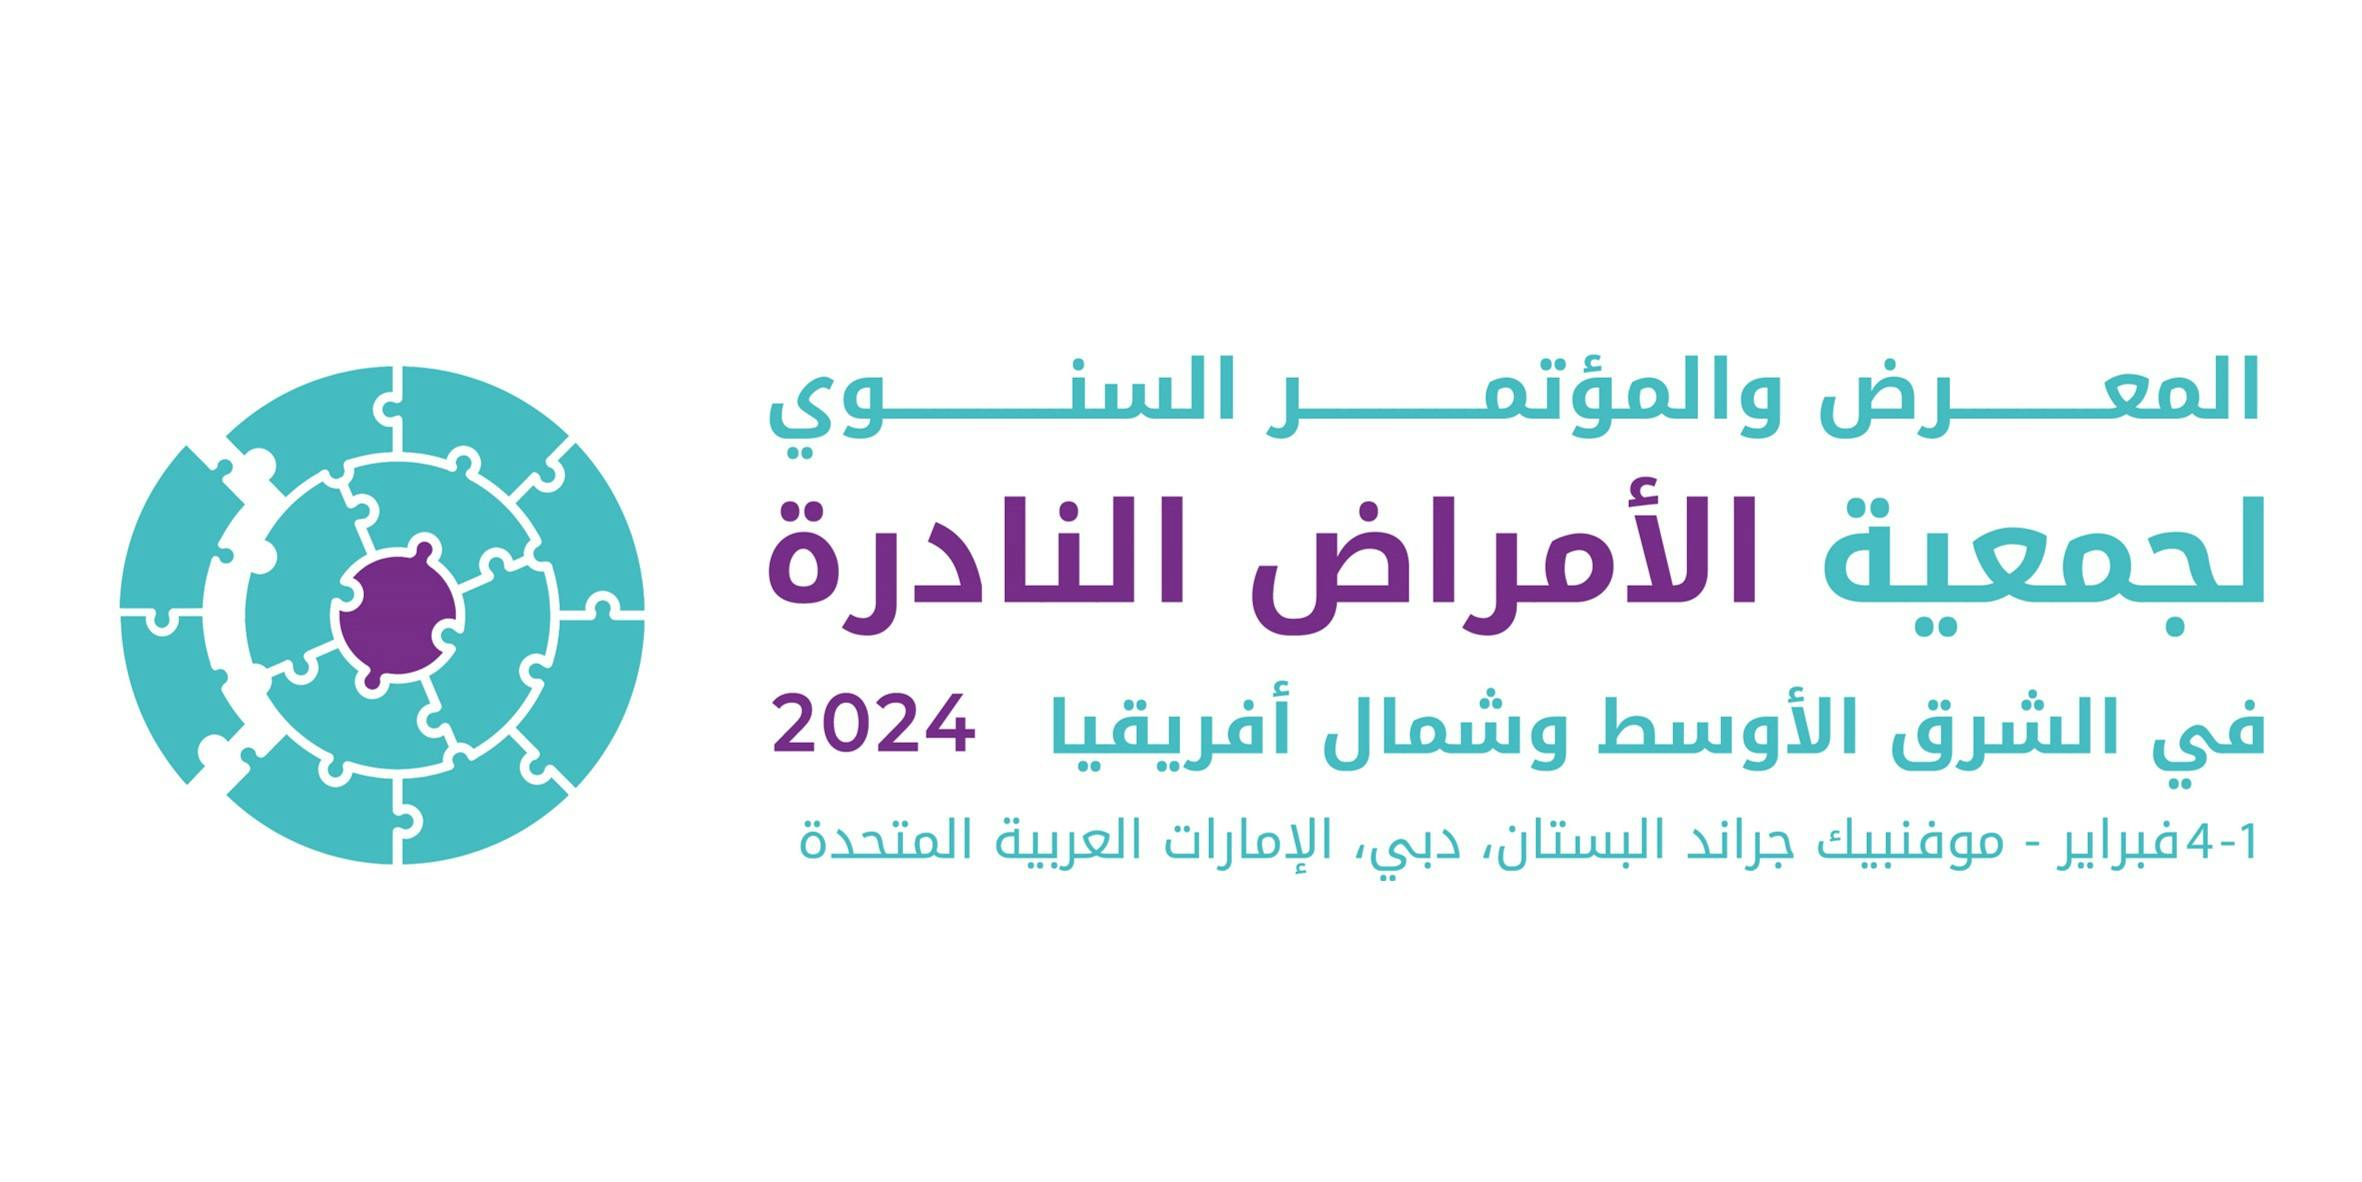 المعرض والمؤتمر السنوي لجمعية الأمراض النادرة في الشرق الأوسط وشمال أفريقيا 2024